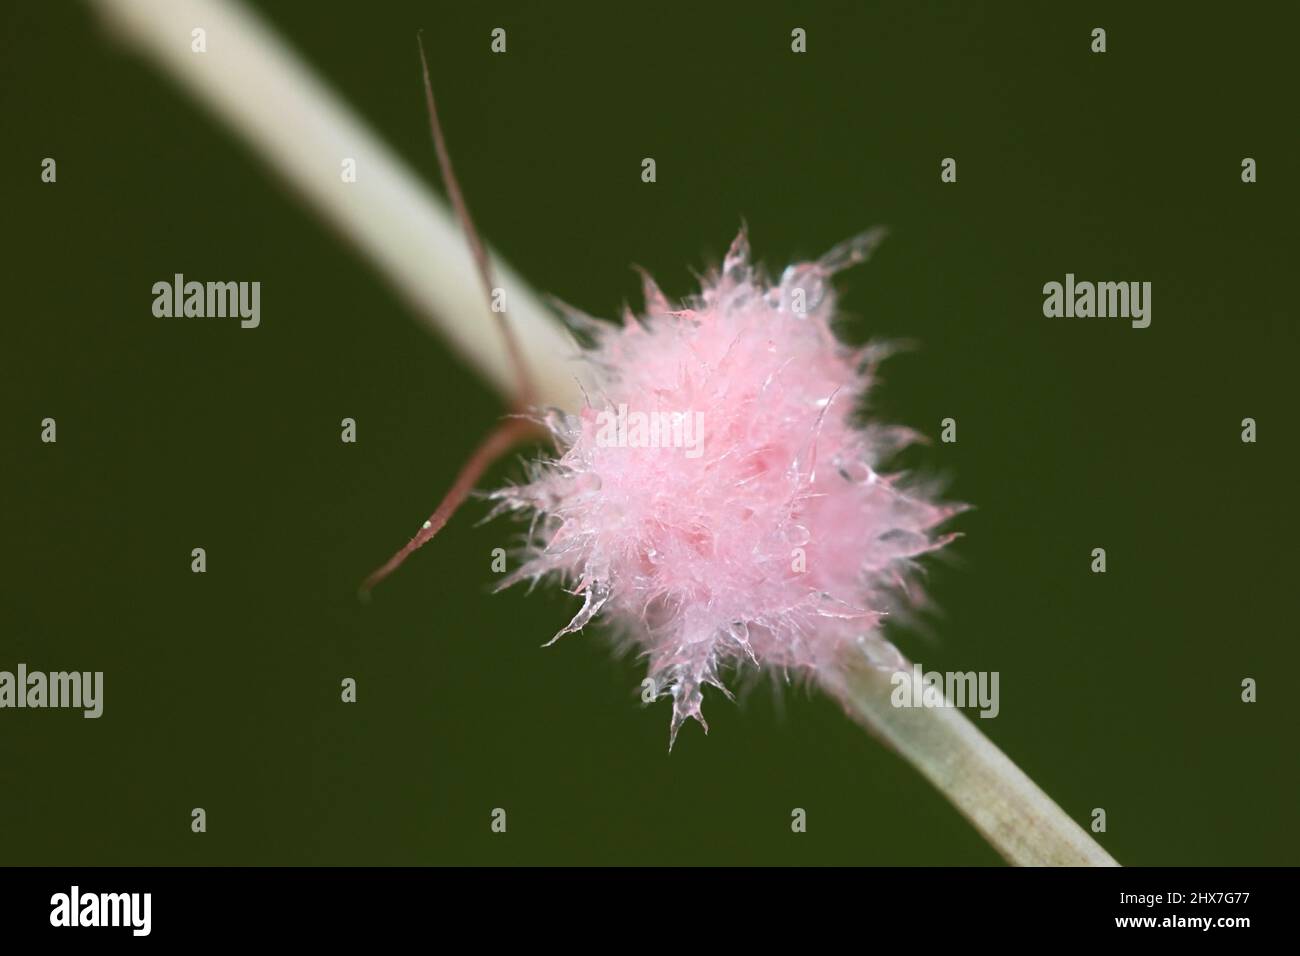 Laetisaria fuciformis, conosciuta come la malattia del filo rosso, un patogeno della pianta che infetta i prati, qui in piccolo, rosa, cotone lana-come palcoscenico del micelio Foto Stock